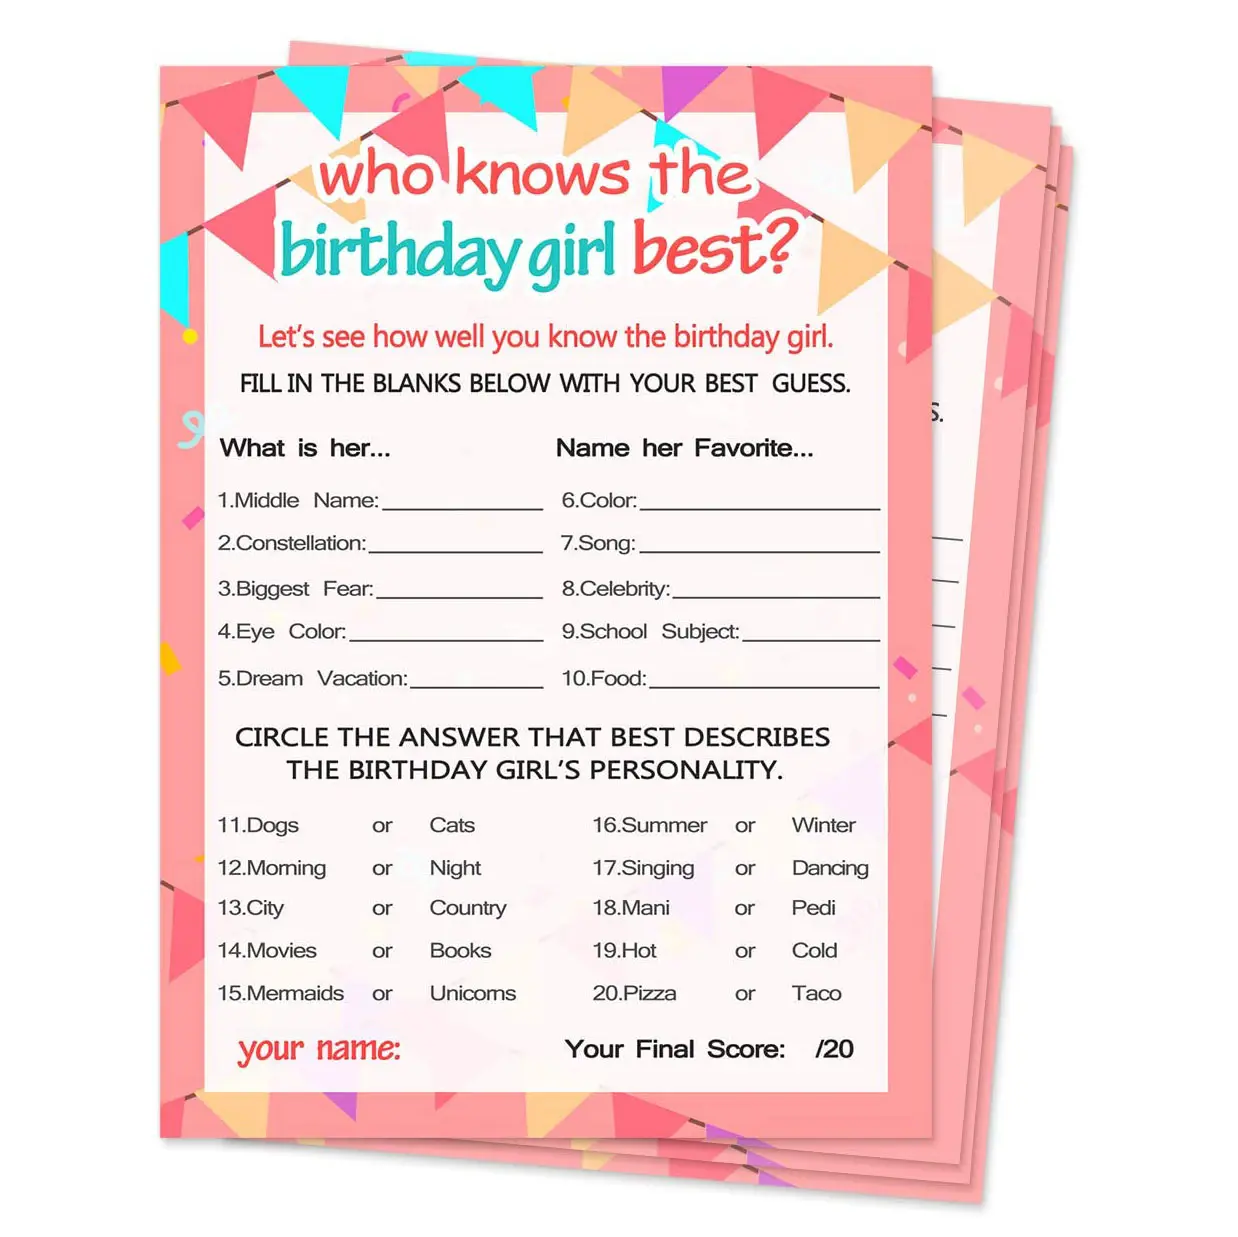 Nicro מותאם אישית יום הולדת ספקי צד תינוק מקלחת מי יודע את יום הולדת ילדה הטובה ביותר יום הולדת ילדה מסיבת משחקי נייר כרטיסים